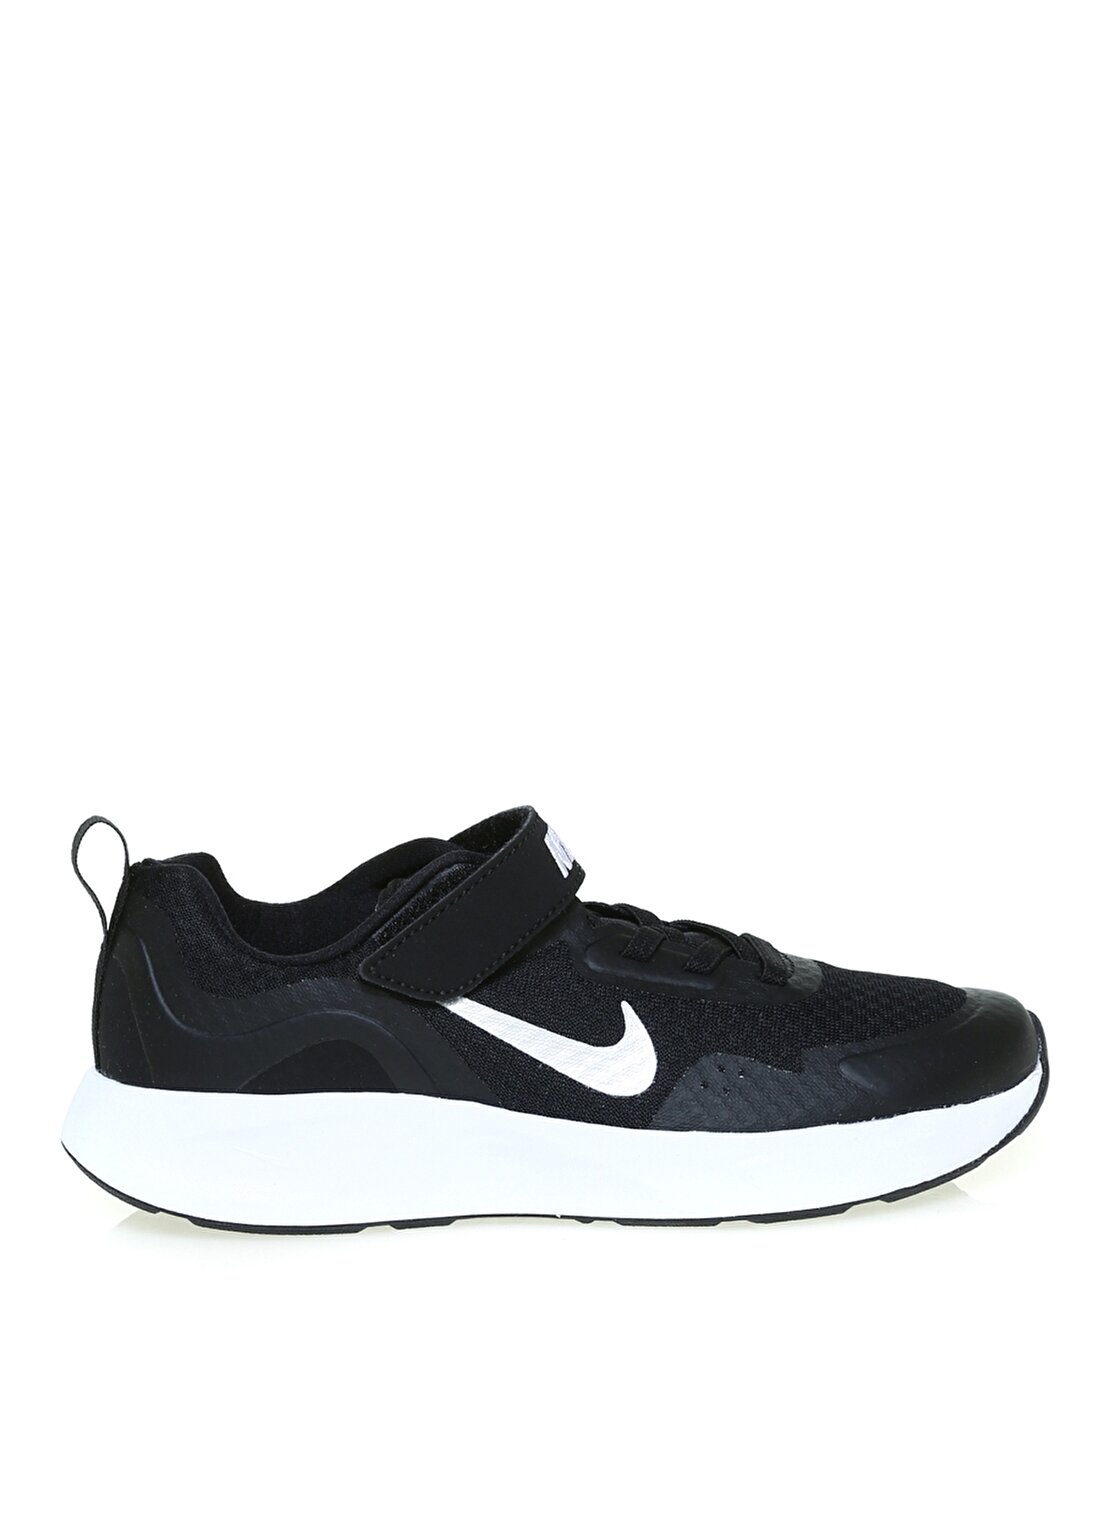 Nike CJ3817-002 We Siyah Erkek Çocuk Yürüyüş Ayakkabısı